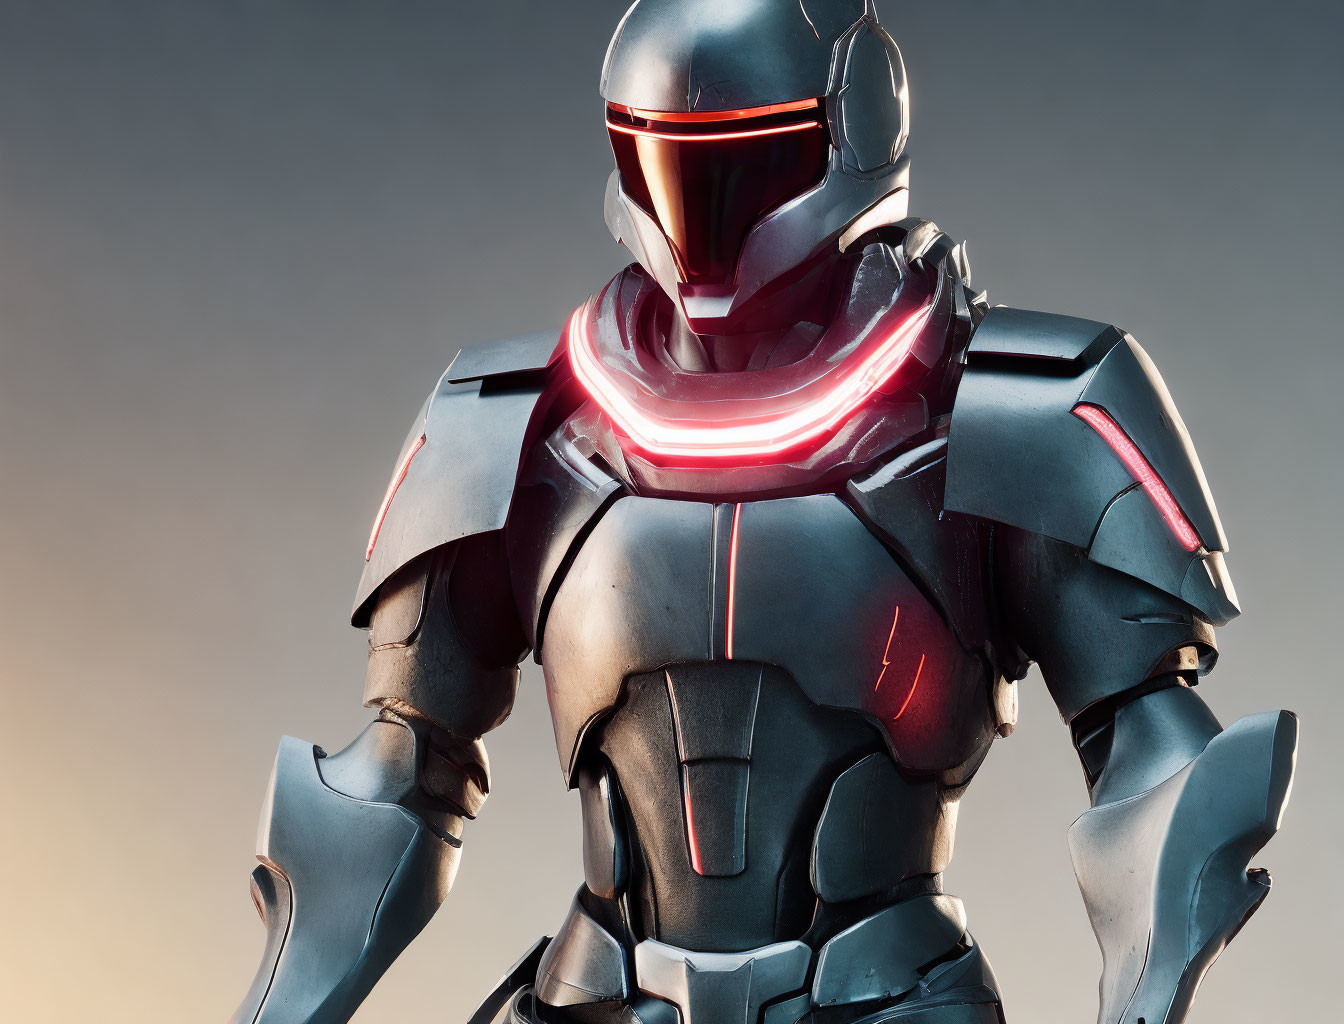 Armored futuristic cybernetic iron man with glowin